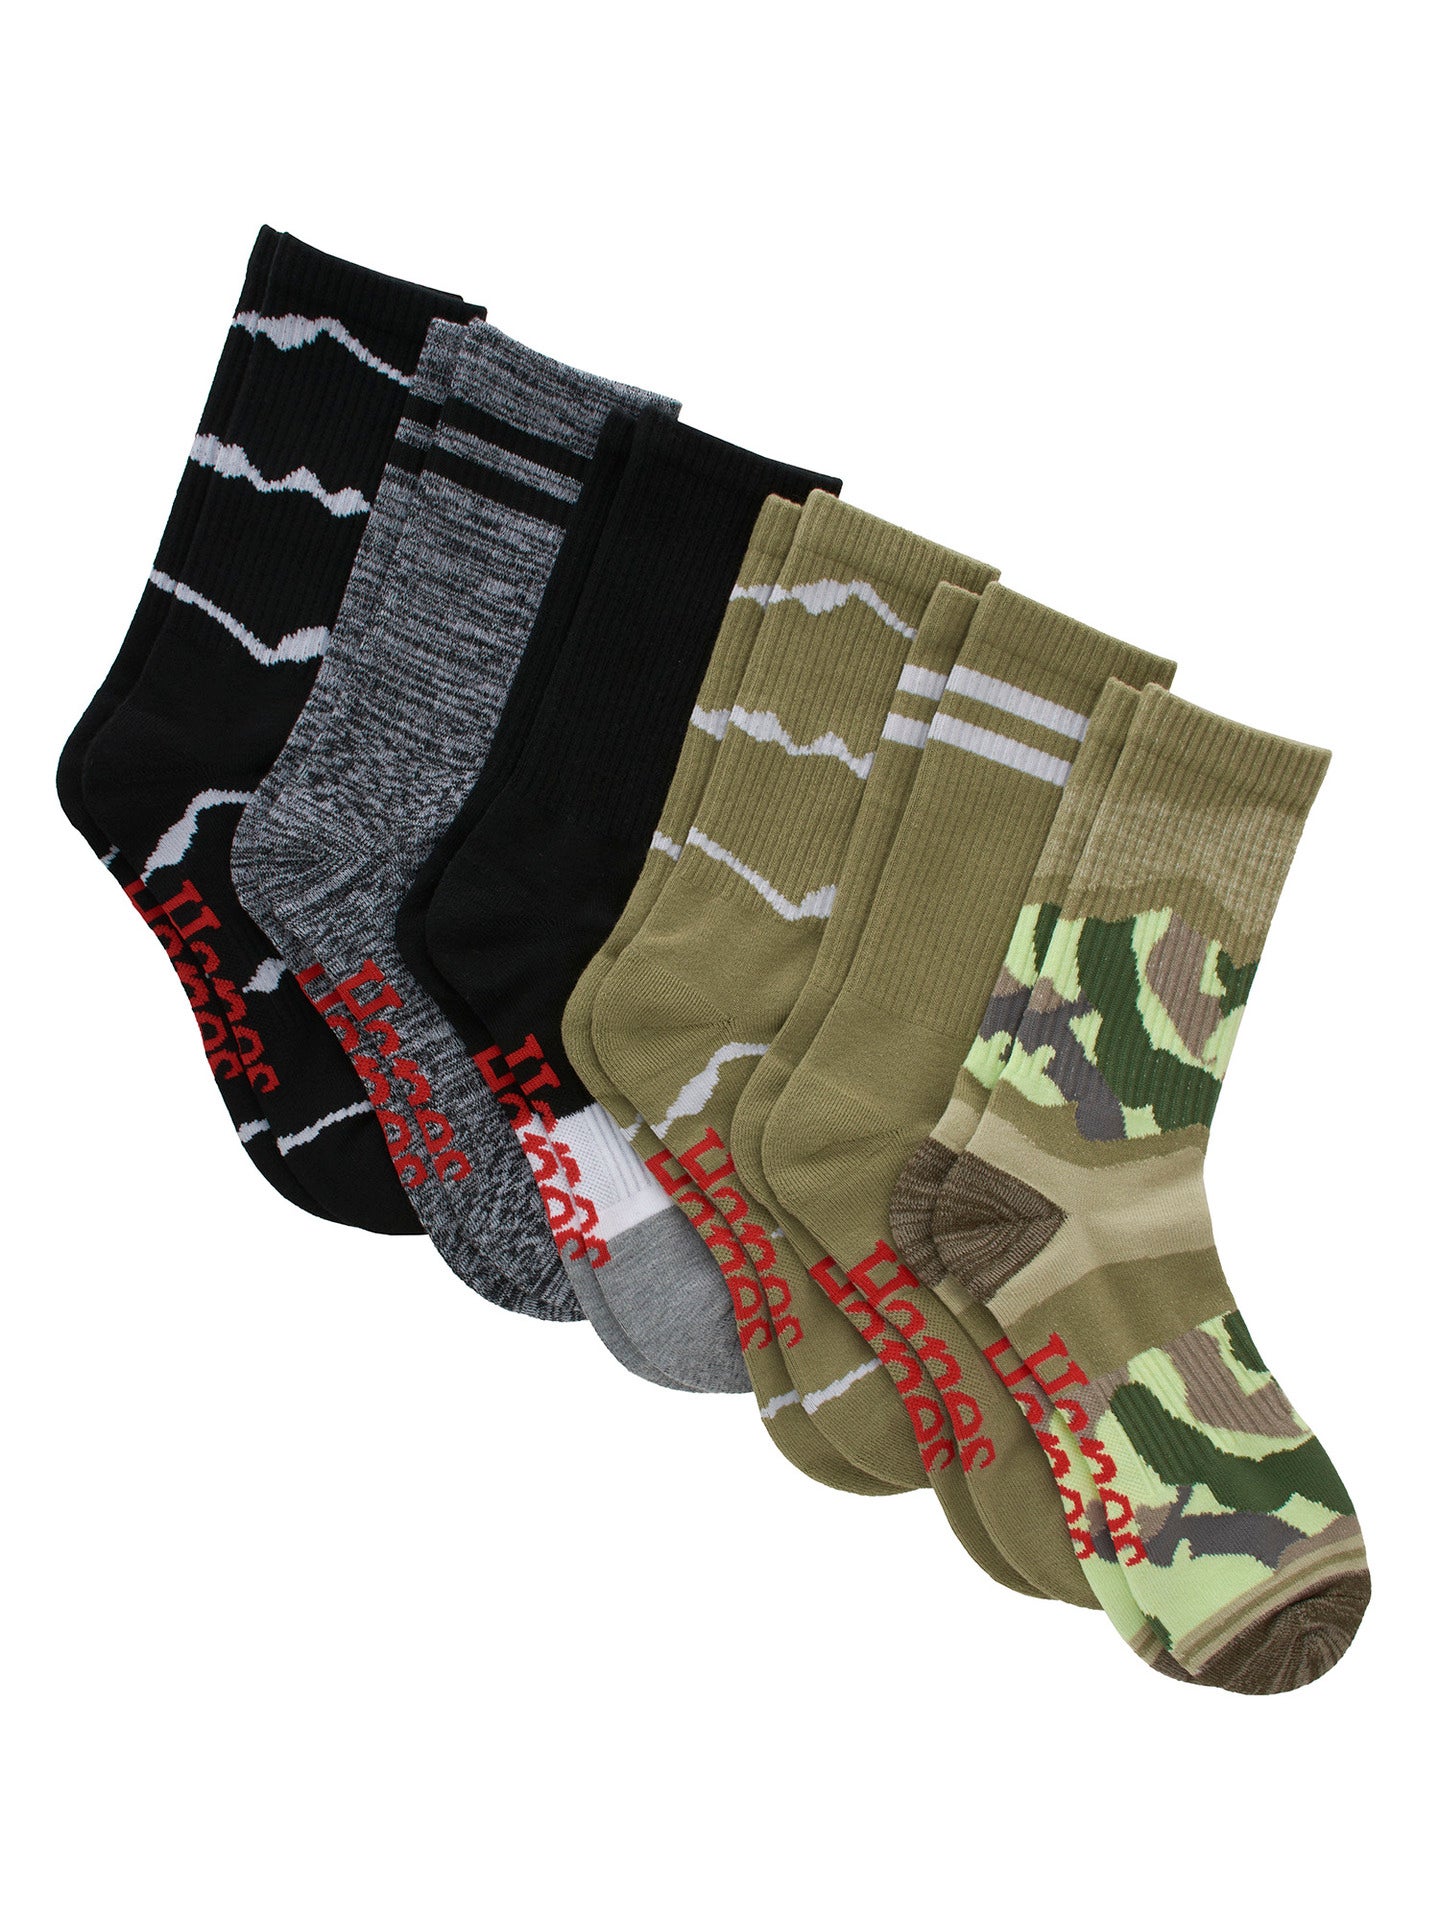 6 pairs of moisture-wicking socks